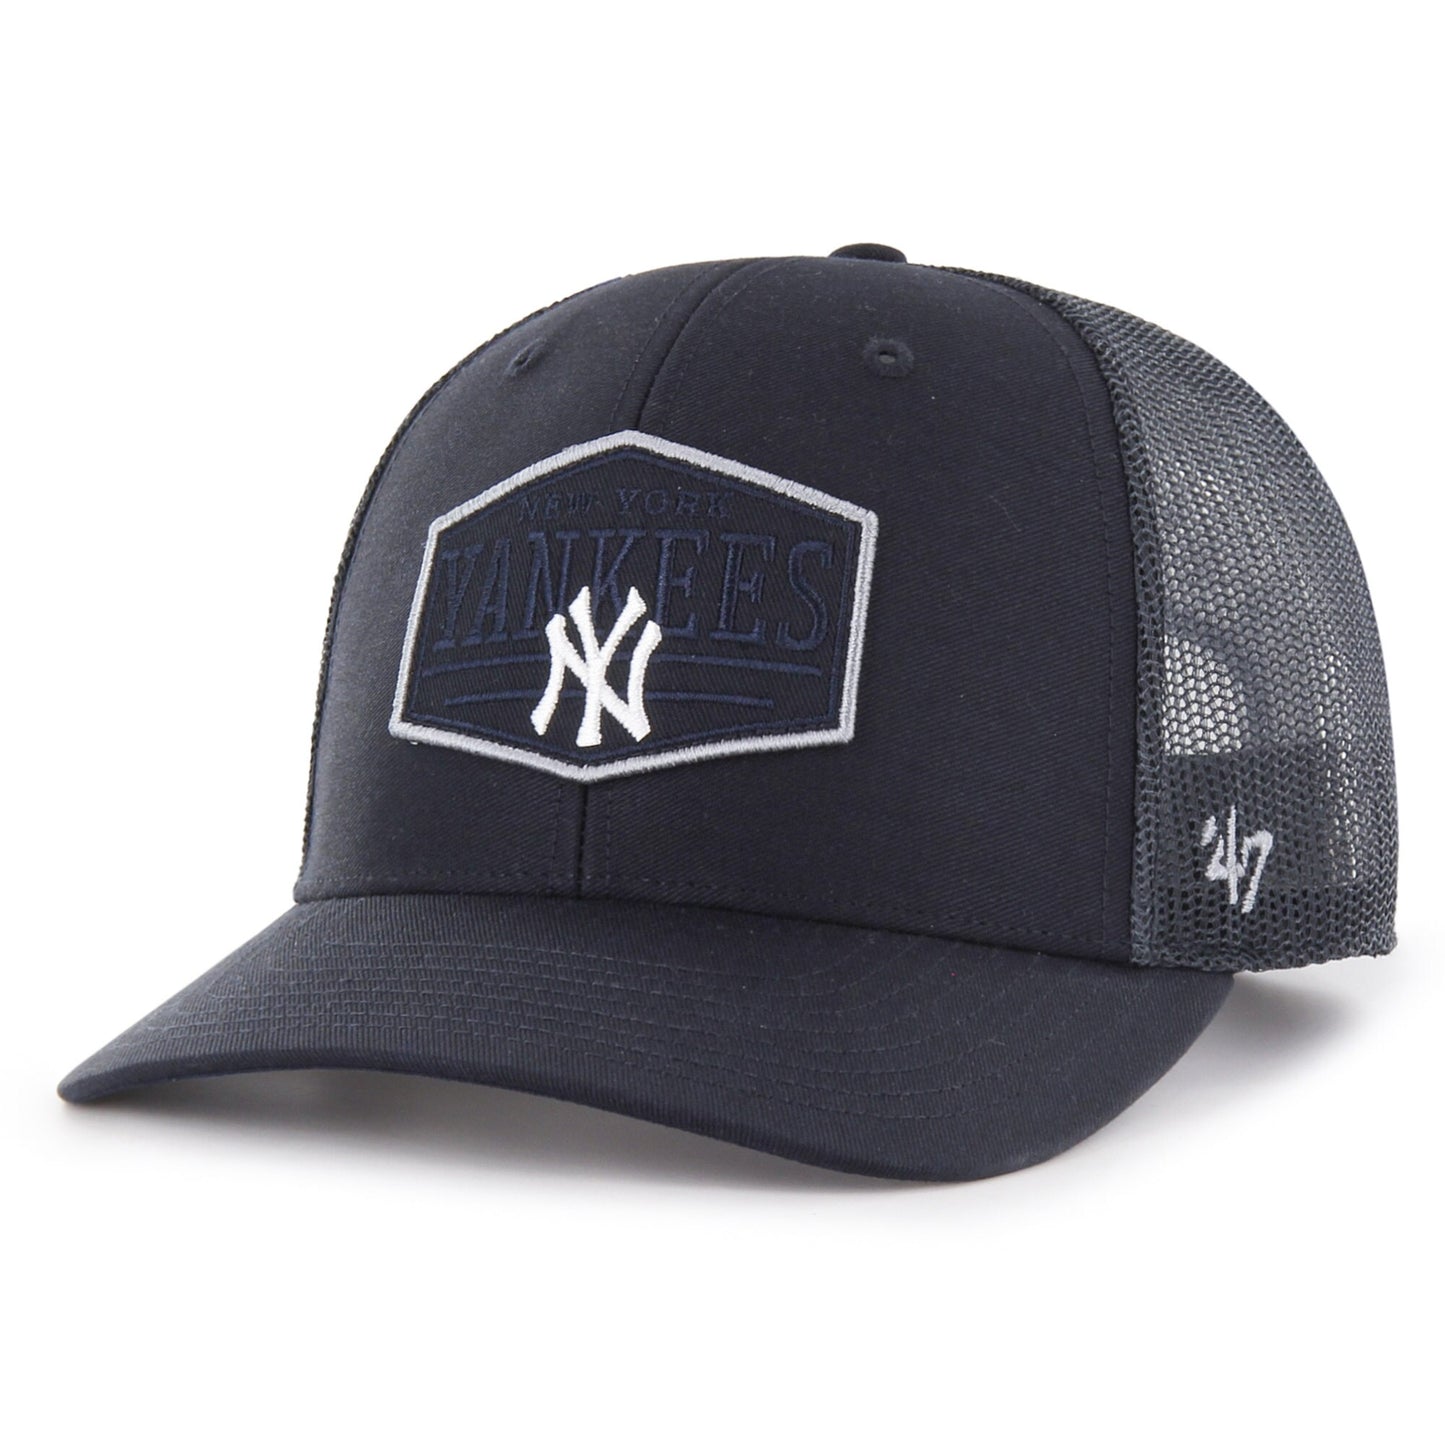 New York Yankees '47 Ridgeline Tonal Patch Trucker Adjustable Hat - Navy